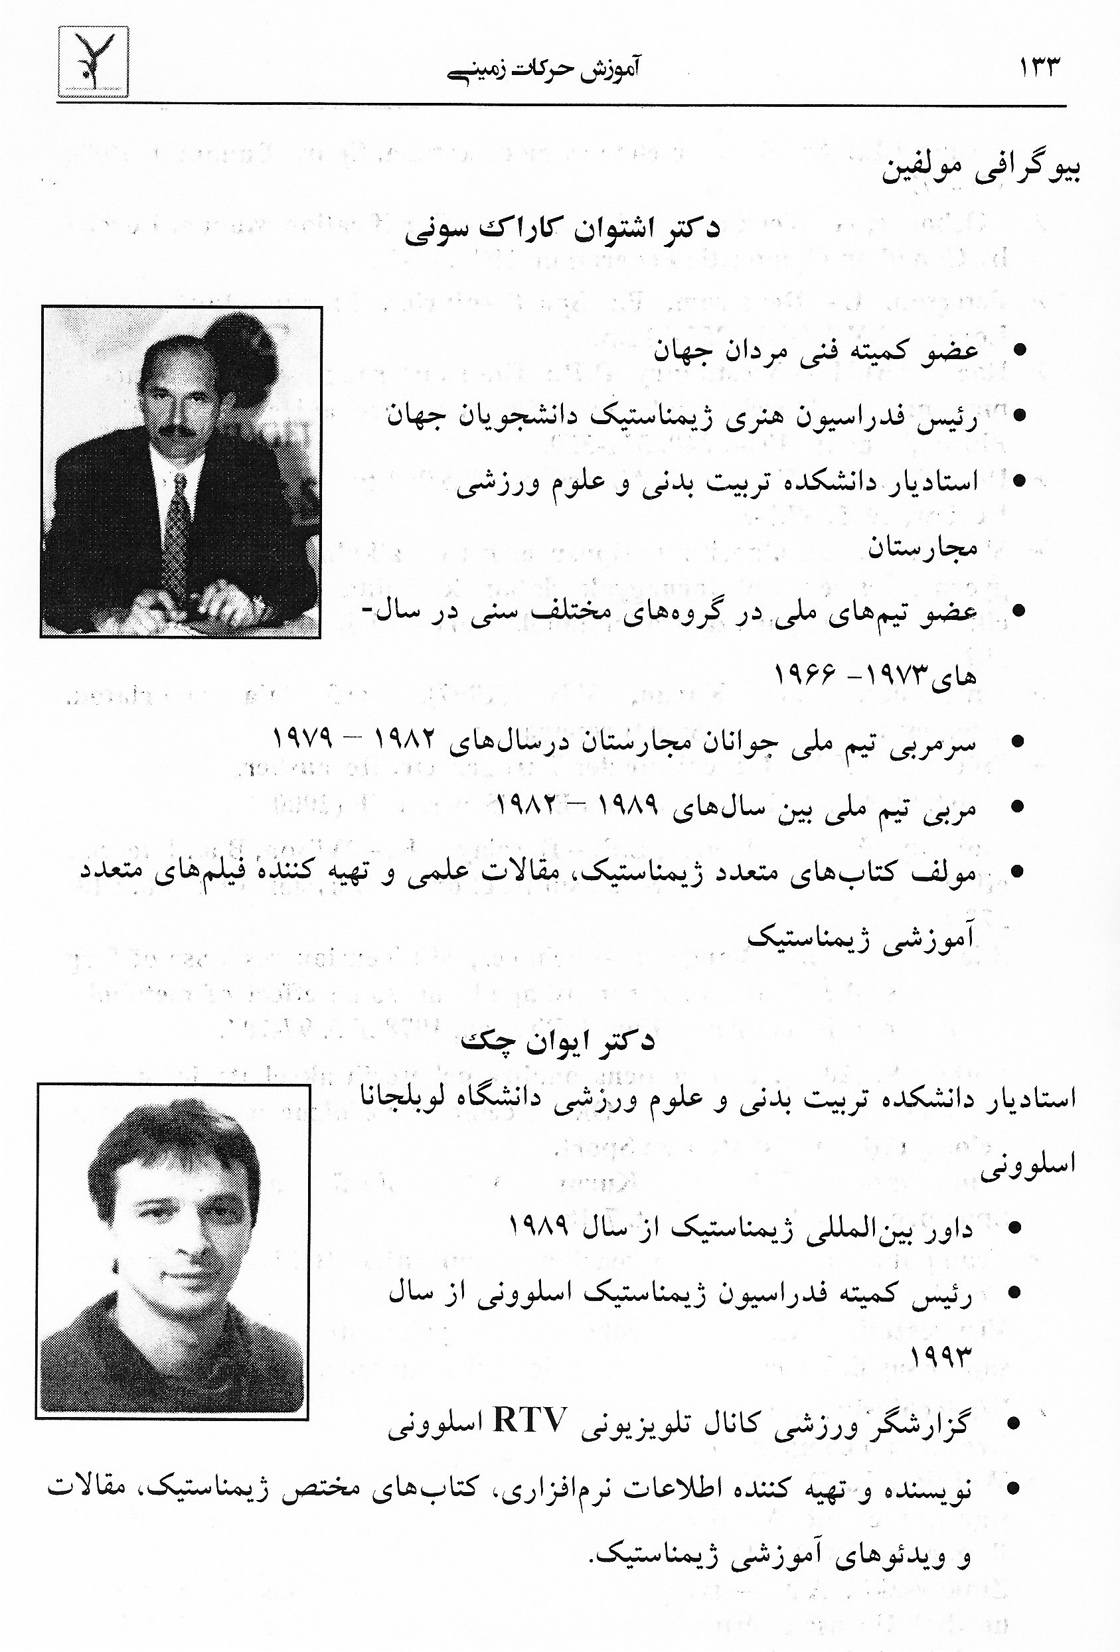 a perzsa nyelven megjelent 'Talaj' című könyv egyik belső oldala